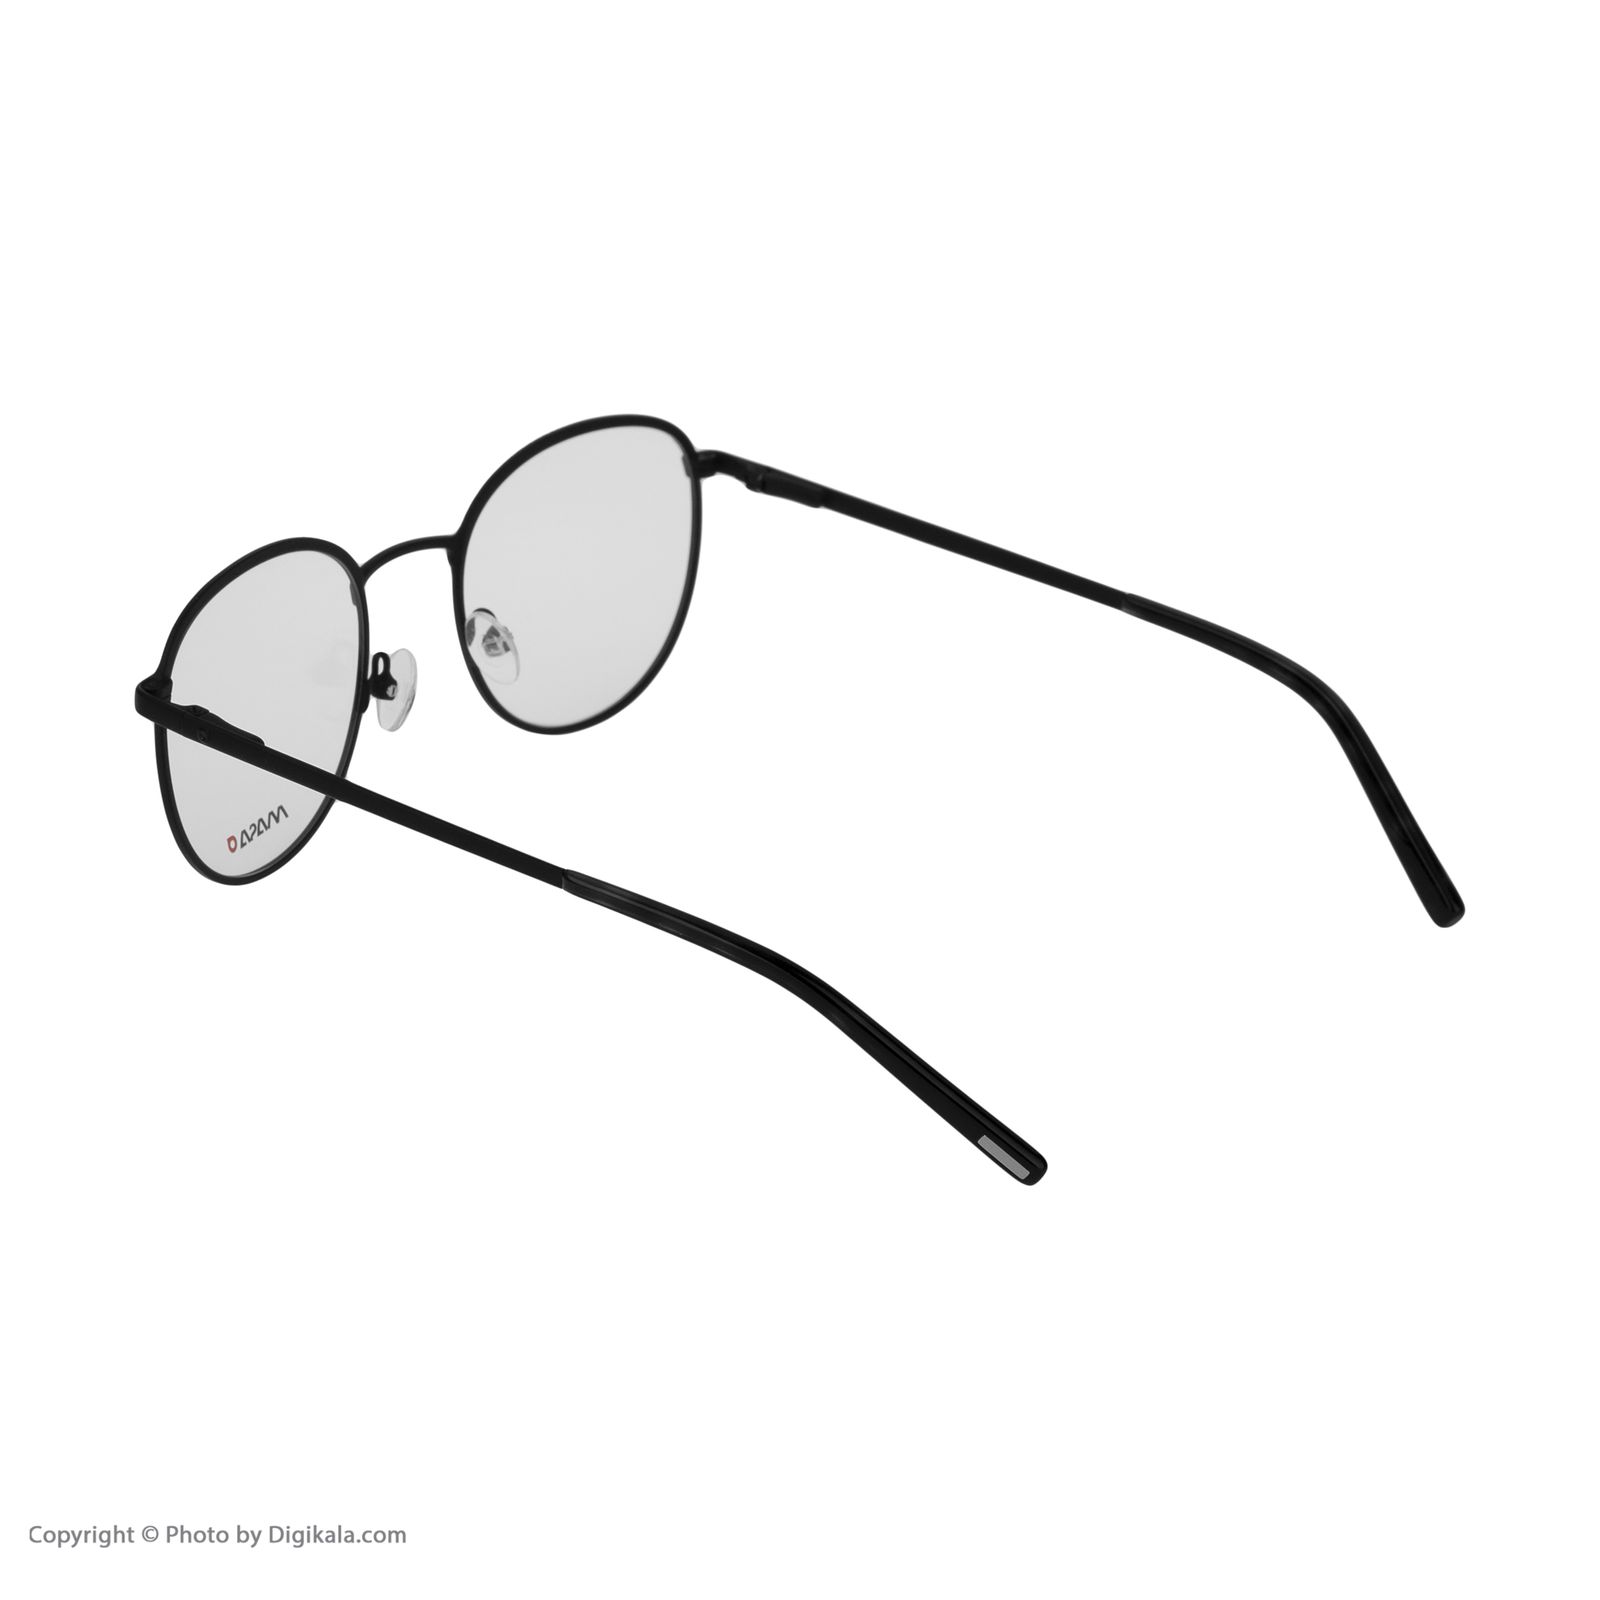 فریم عینک طبی ماسائو مدل 13191-115 -  - 2